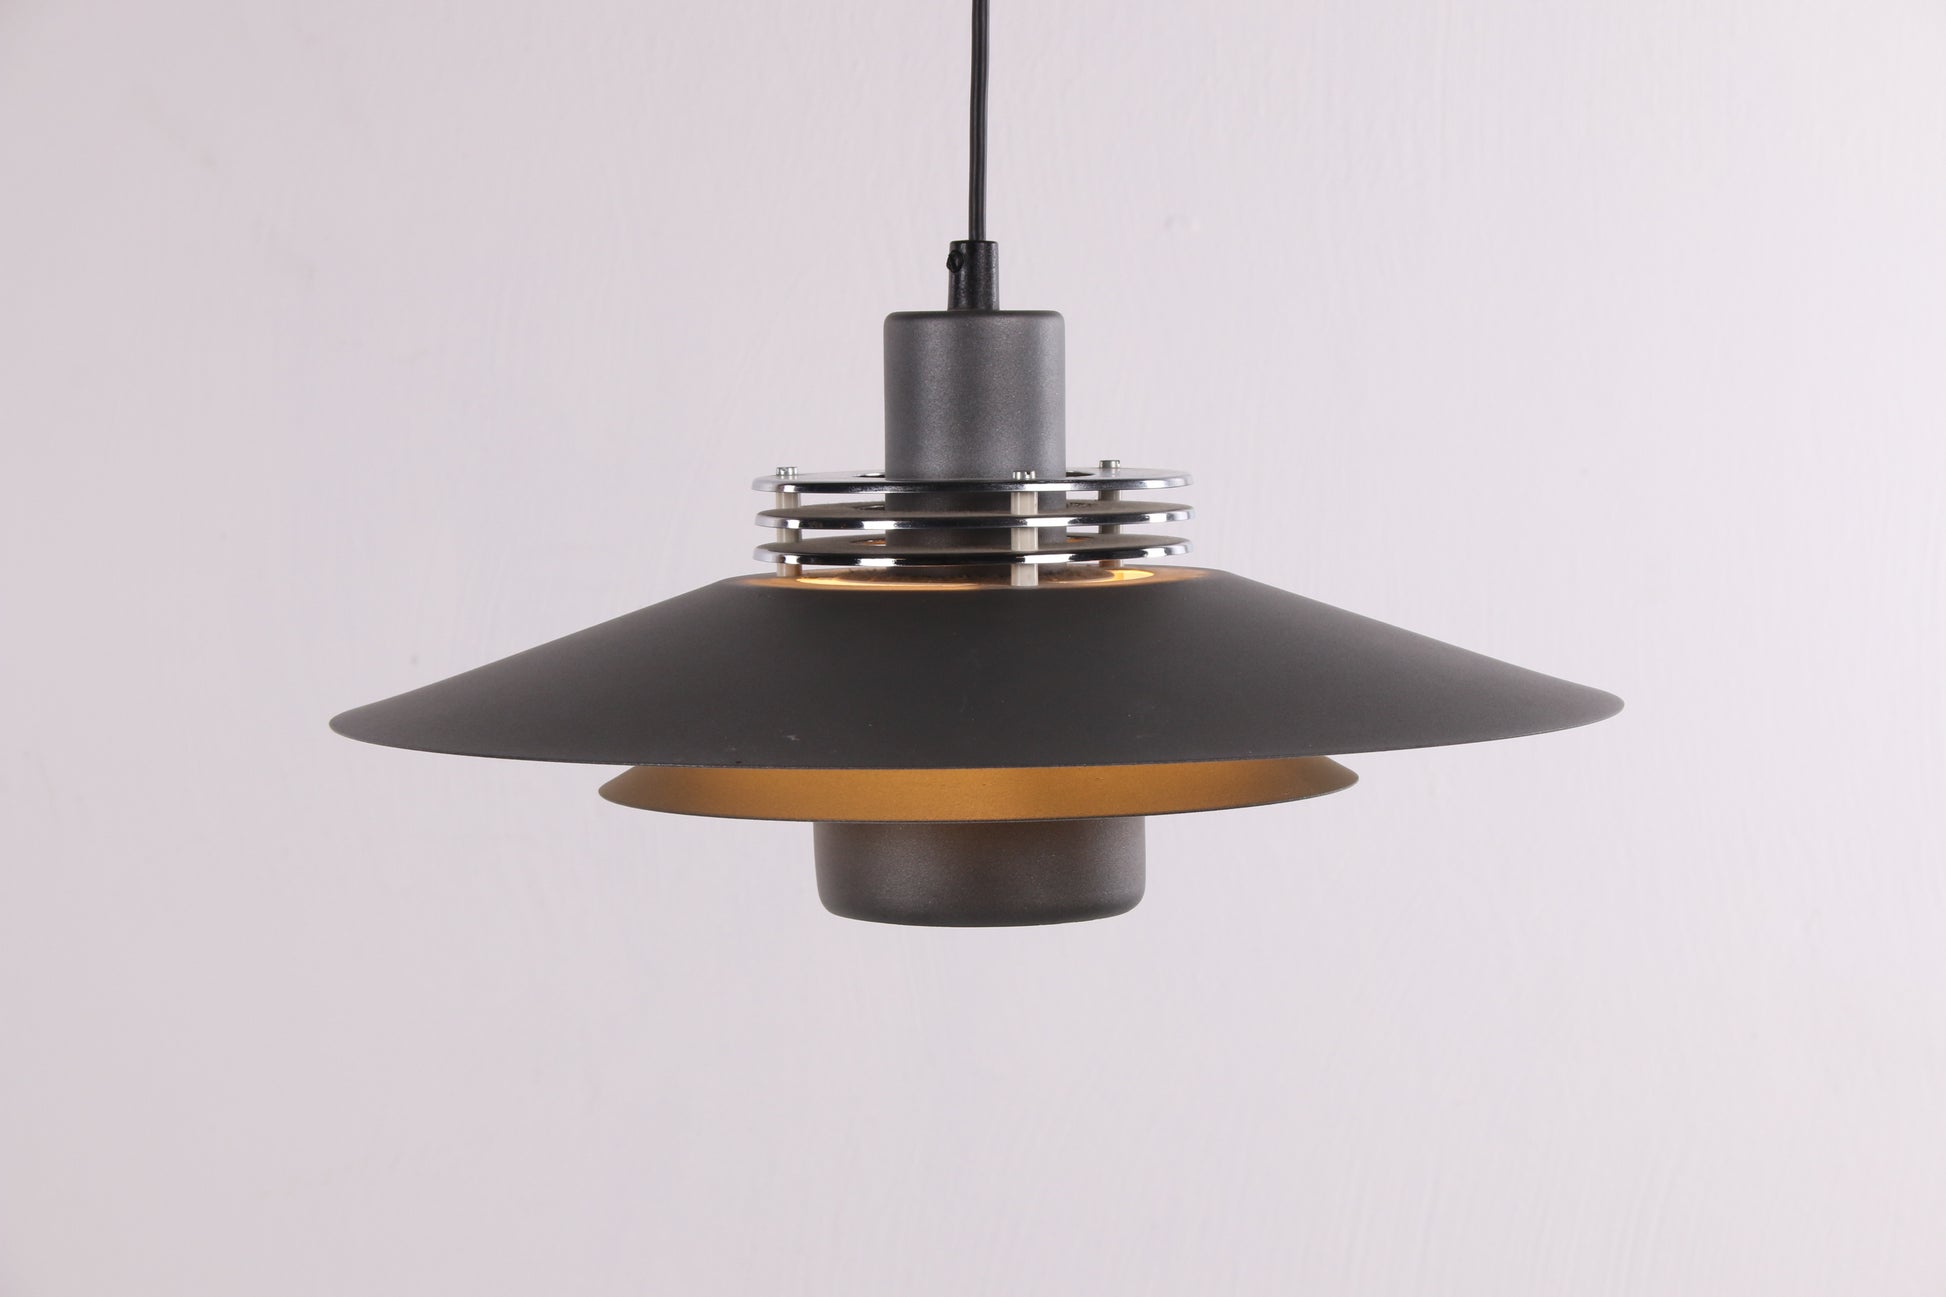 Deense Design Hanglamp Aluminium grijs van kleur voorkant licht uit